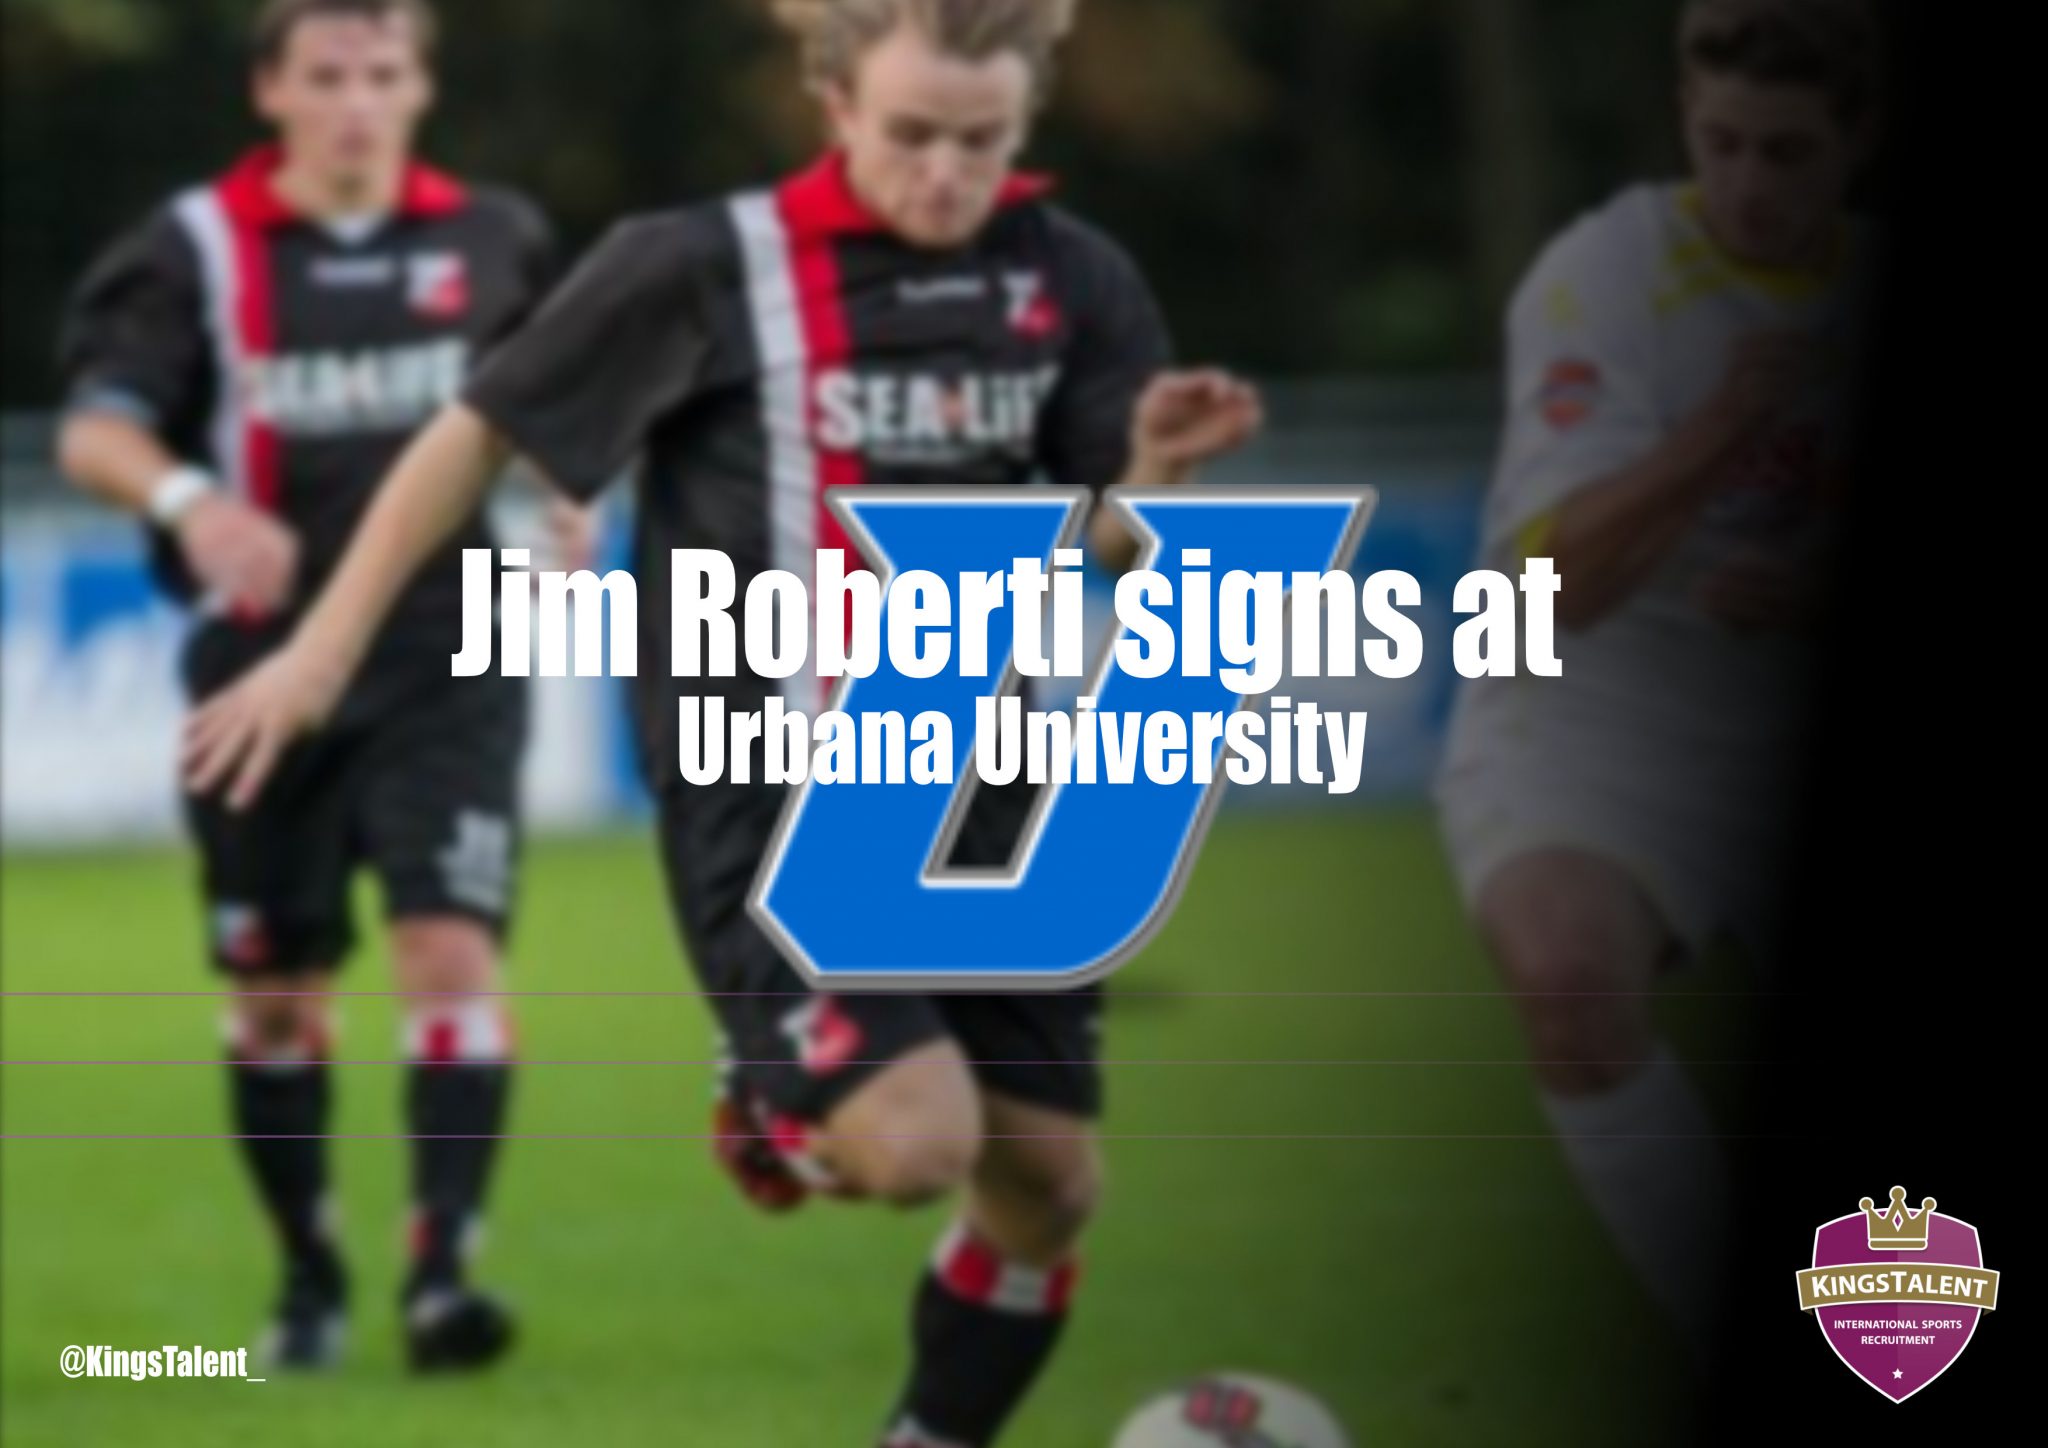 Jim Roberti signs at Urbana